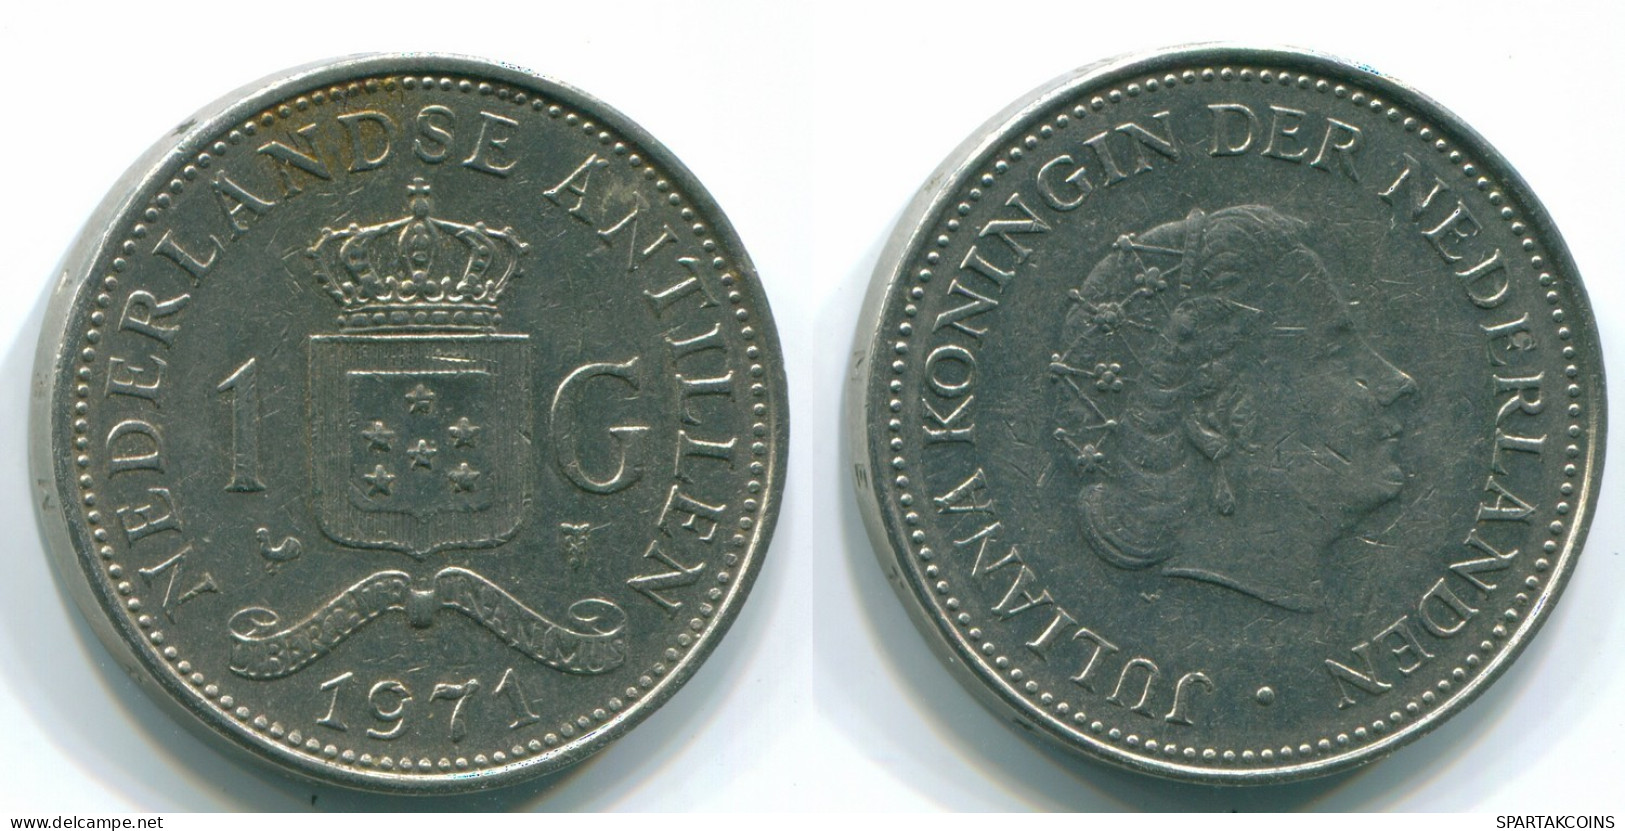 1 GULDEN 1971 NETHERLANDS ANTILLES Nickel Colonial Coin #S12012.U.A - Niederländische Antillen